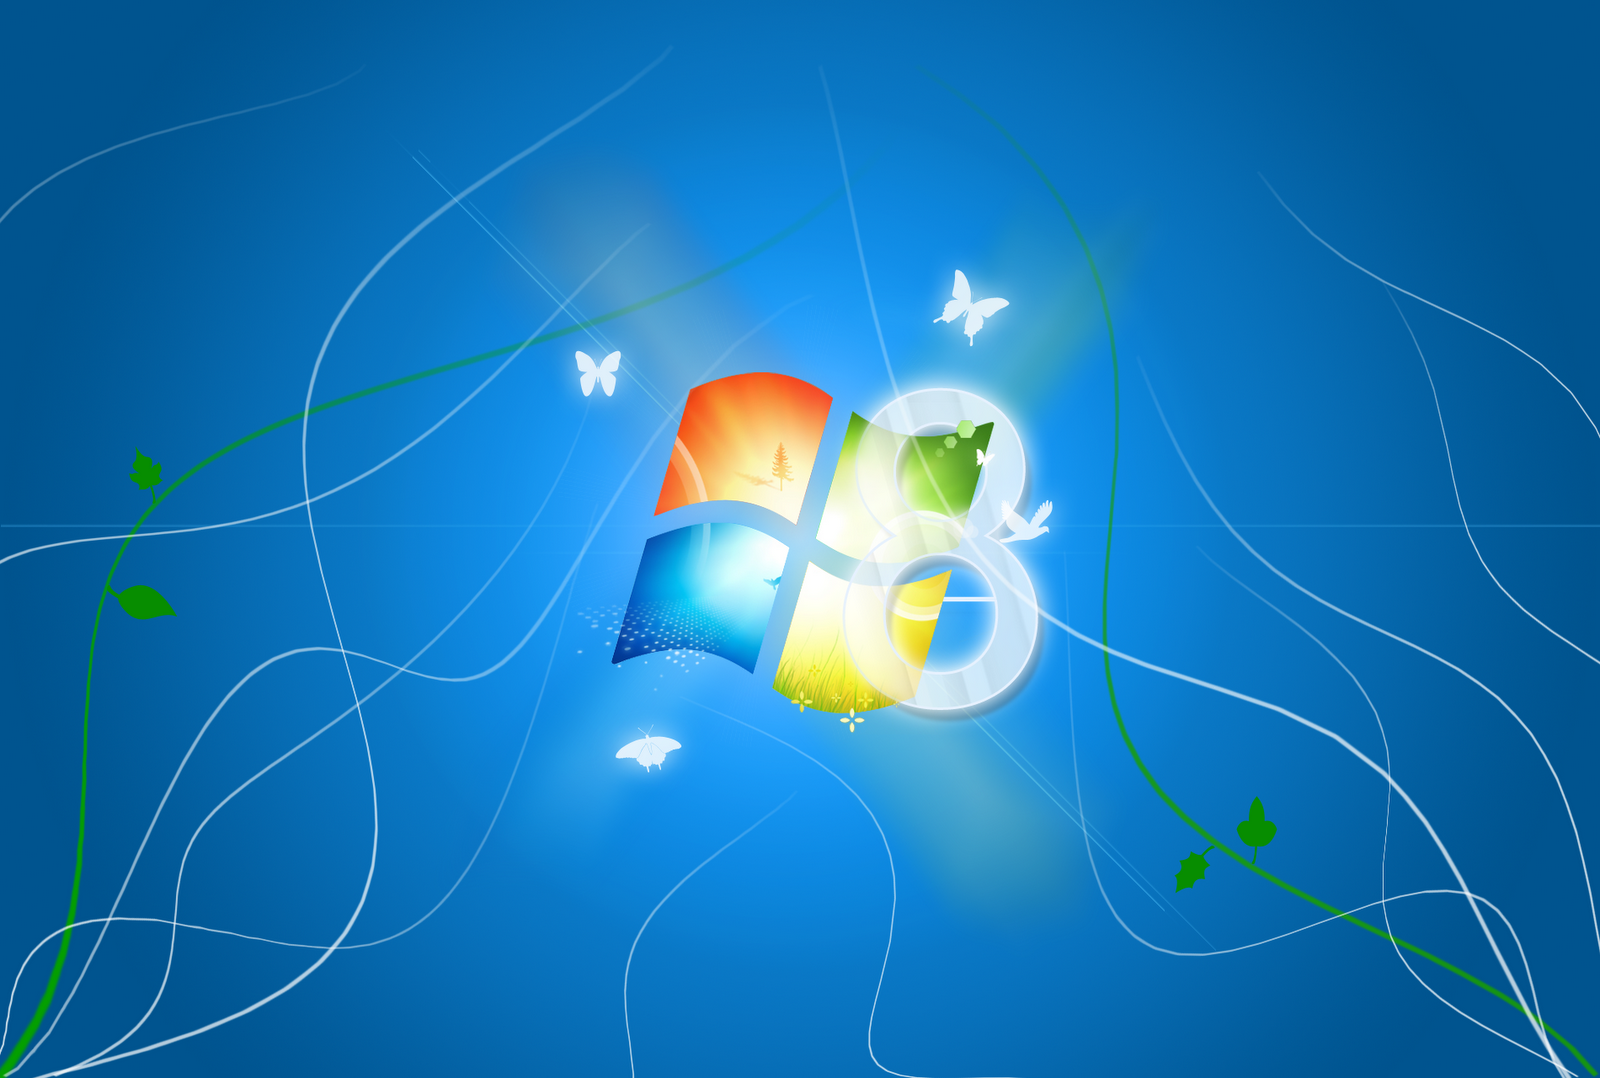 Hình nền Windows 8 miễn phí: Tận hưởng tất cả những hình nền Windows 8 miễn phí, tuyệt đẹp, độc đáo để làm cho màn hình của bạn trở nên sống động và ấn tượng hơn. Bạn sẽ không biết tìm kiếm hình nền đẹp ở đâu nữa khi đã có tất cả giải pháp trên trang web chúng tôi.